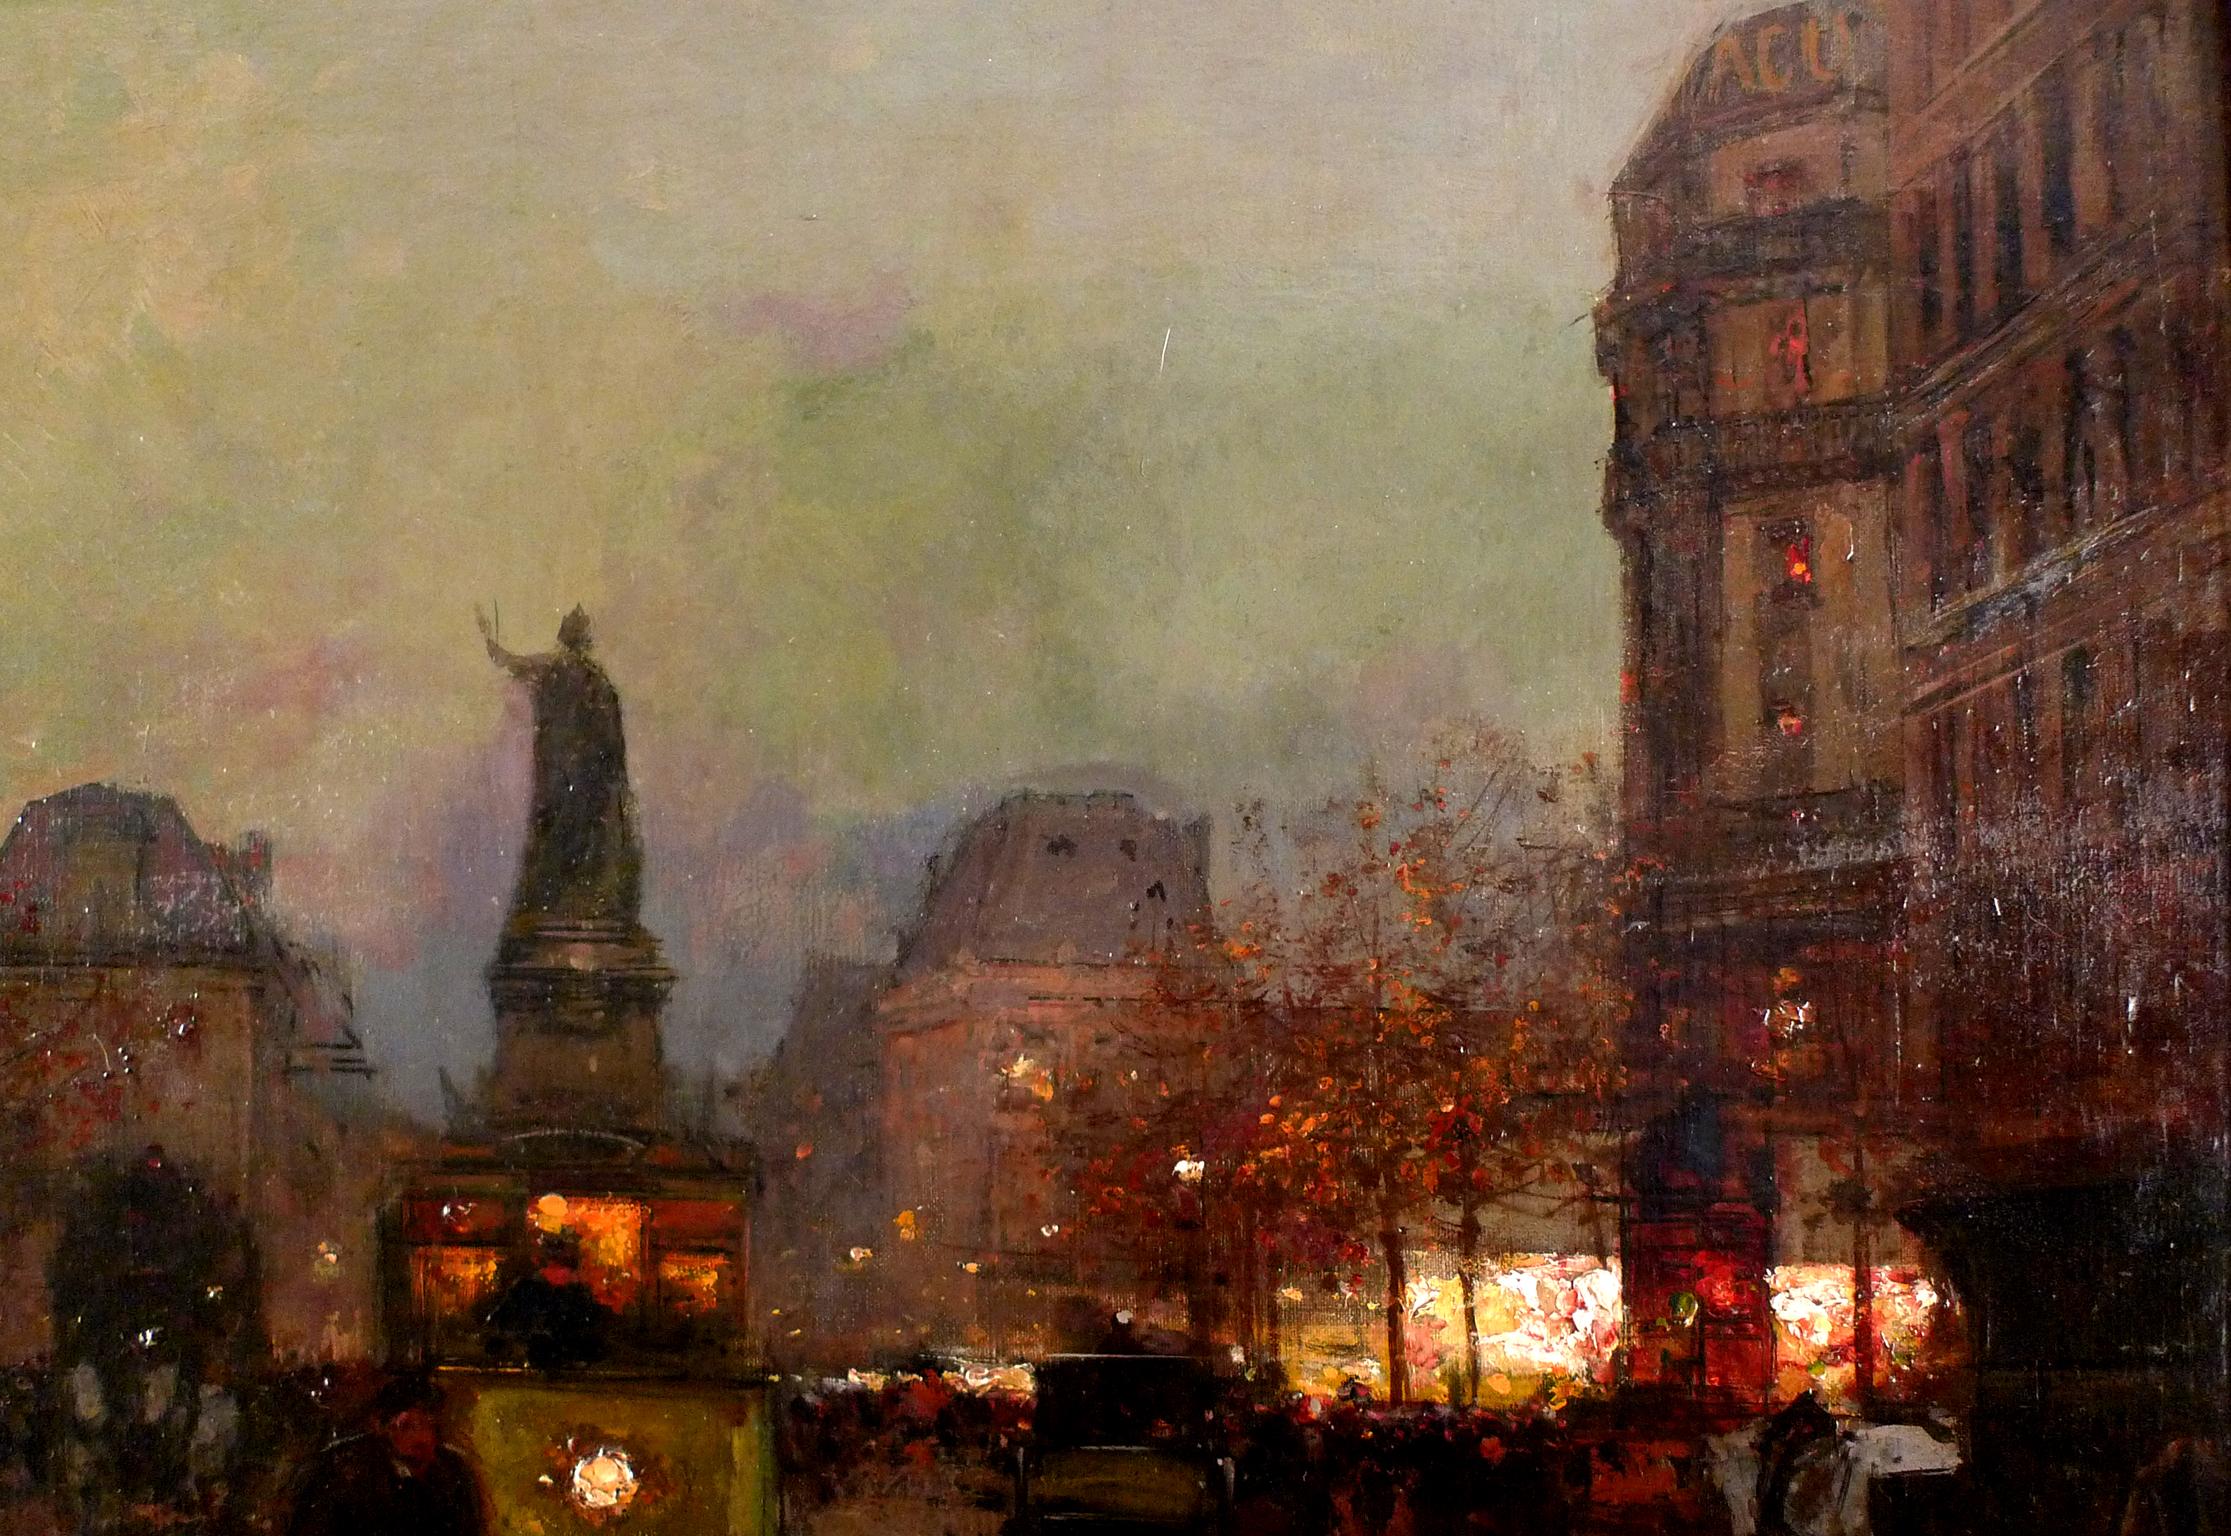 Place de la République, 20th Century Oil on Canvas by Edouard Léon Cortès - Brown Figurative Painting by Édouard Leon Cortès